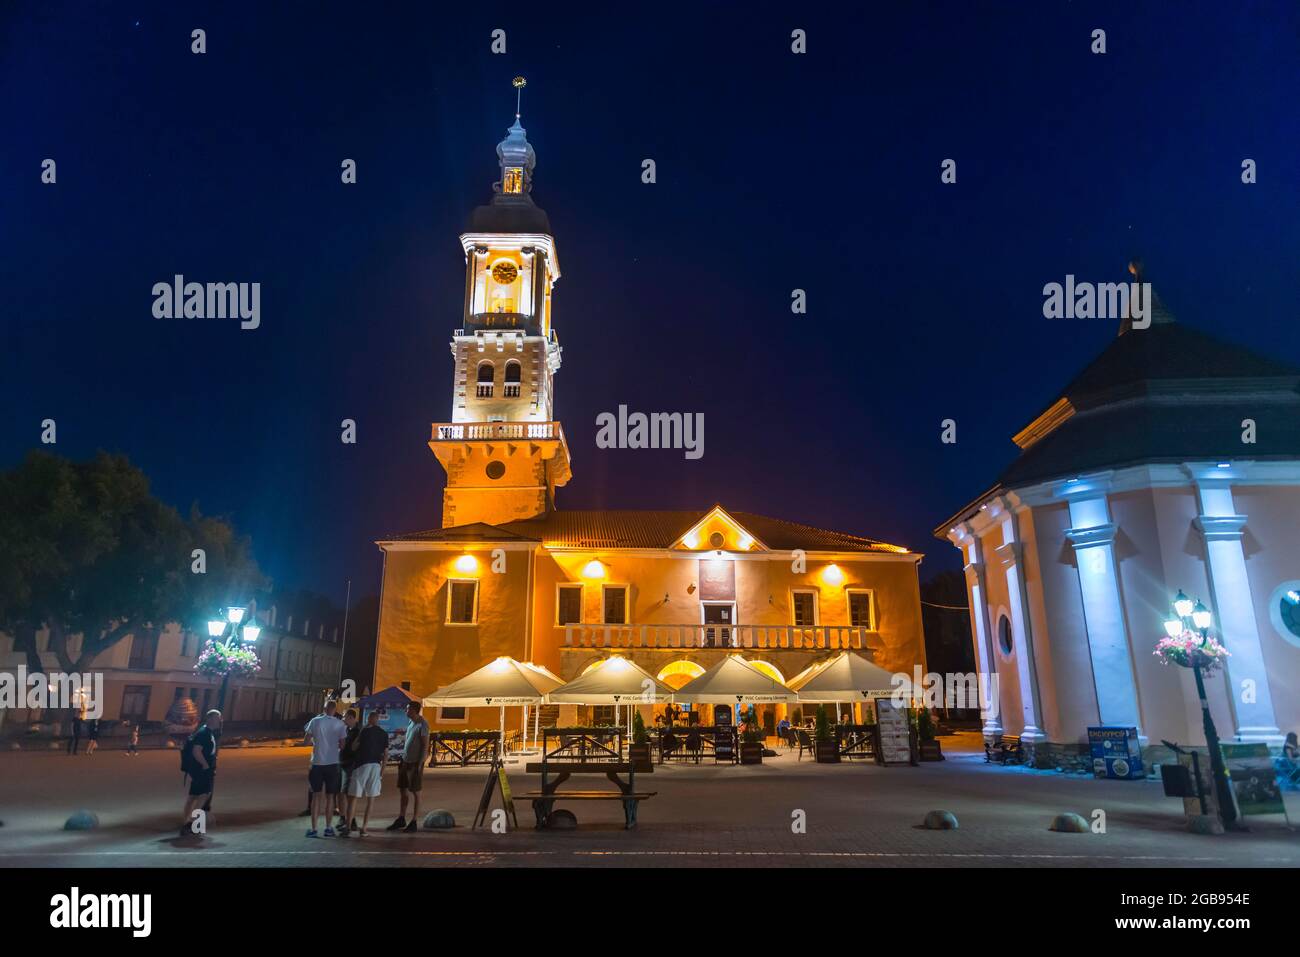 Edificio de magistrados polacos al atardecer, ahora el ayuntamiento de Kamianets-Podilskyi, Ucrania Foto de stock